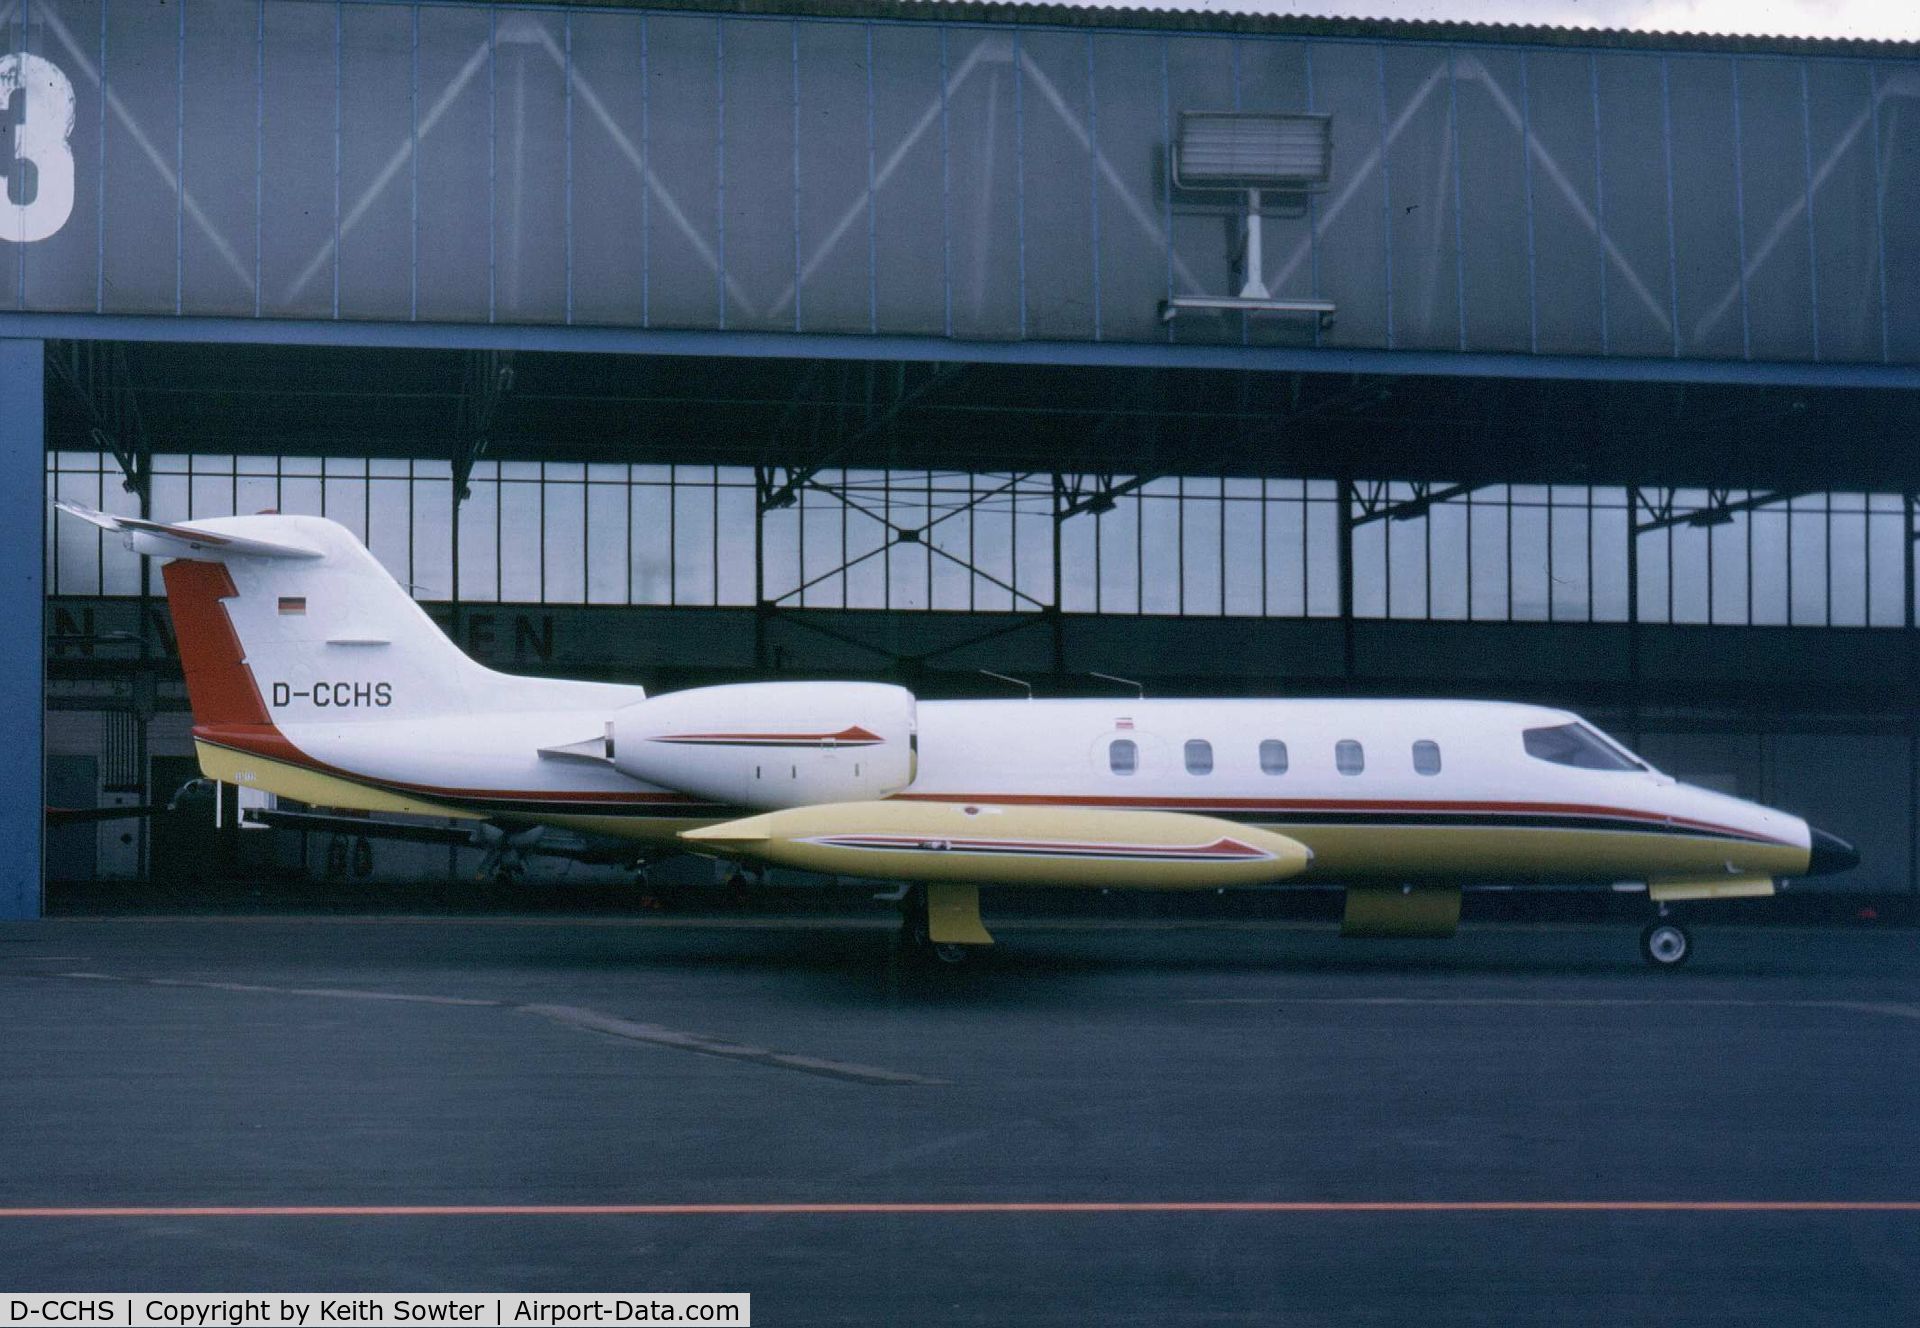 D-CCHS, 1982 Gates Learjet 55 C/N 55-049, Dusseldorf